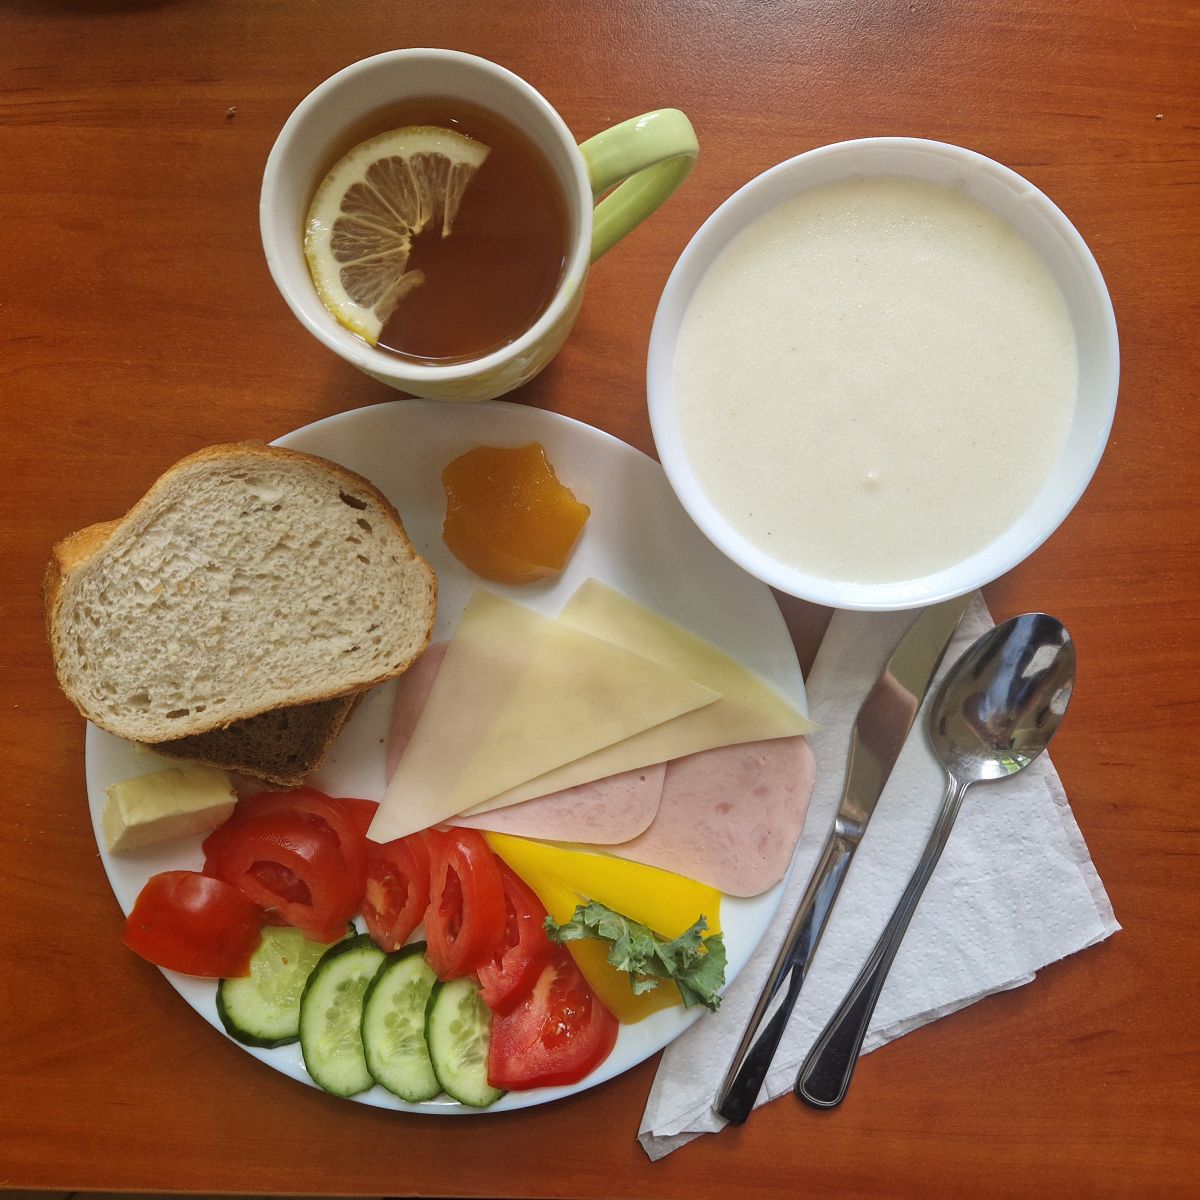 zupa mleczna, dżem, kanapki z masłem, serem i wędliną, warzywa, herbata z cytryną